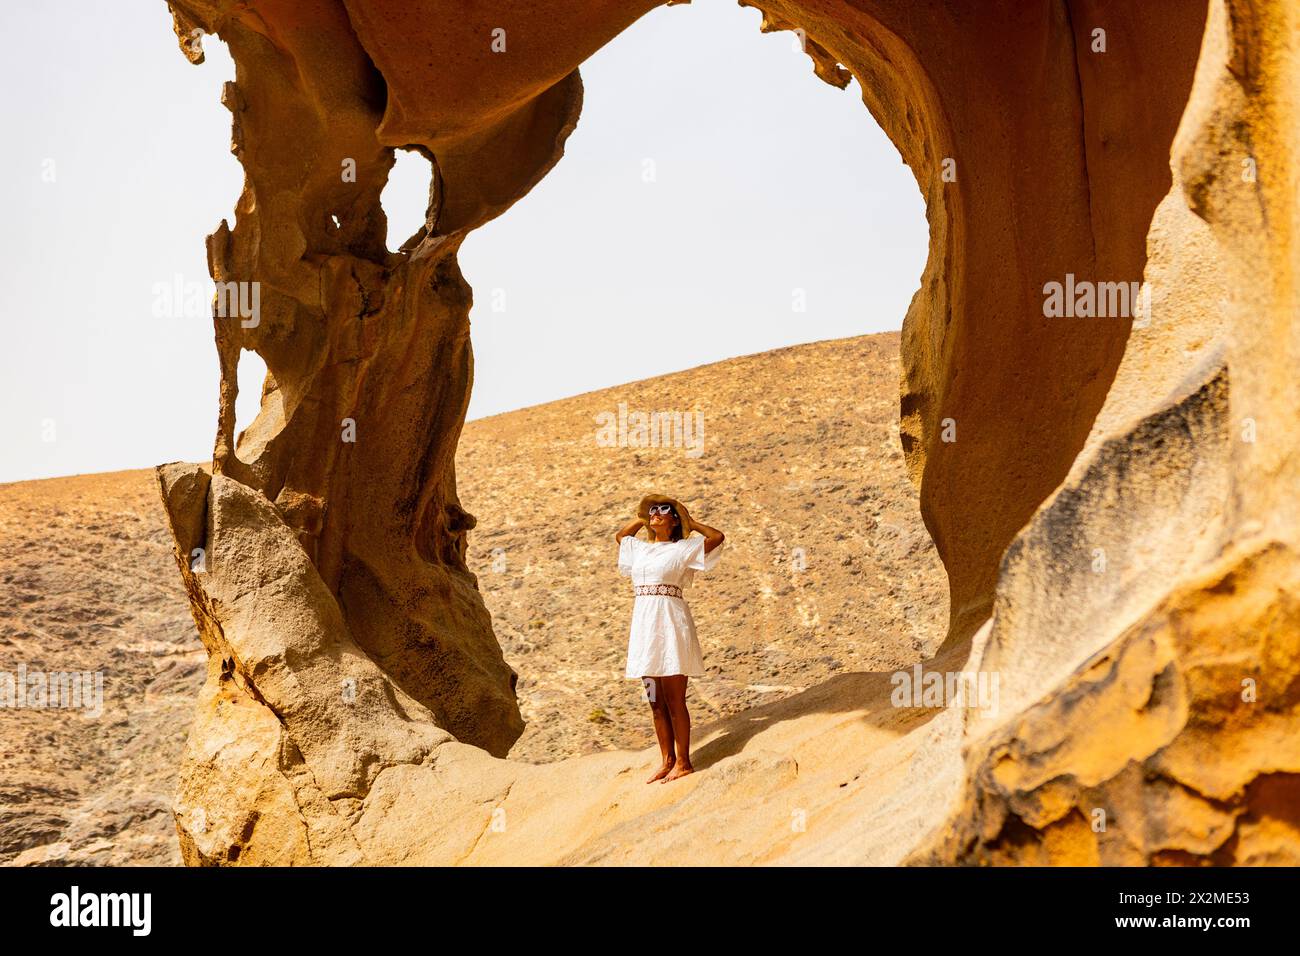 Una donna con un abito bianco e un cappello si erge pacificamente all'interno di un arco di roccia intemprato in un paesaggio deserto, incarnando tranquillità e relax. Foto Stock